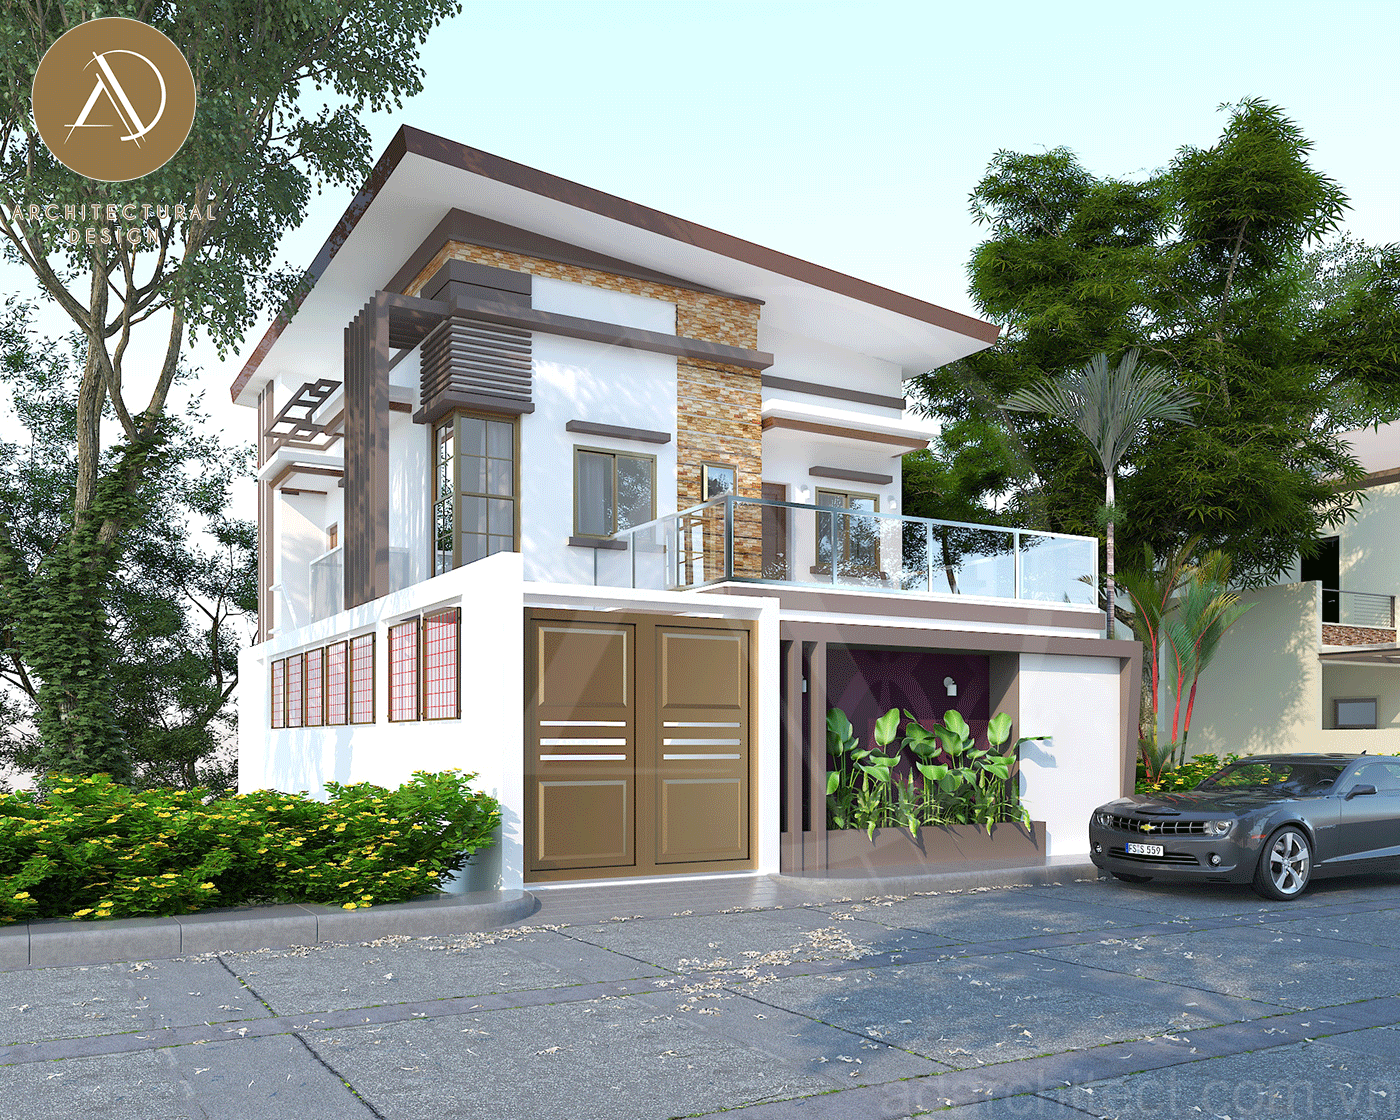 mặt tiền nhà đẹp 2 tầng: thiết kế tông vàng kết hợp màu trắng hiện đại, bố trí thêm cây xanh cho mặt tiền xanh mát